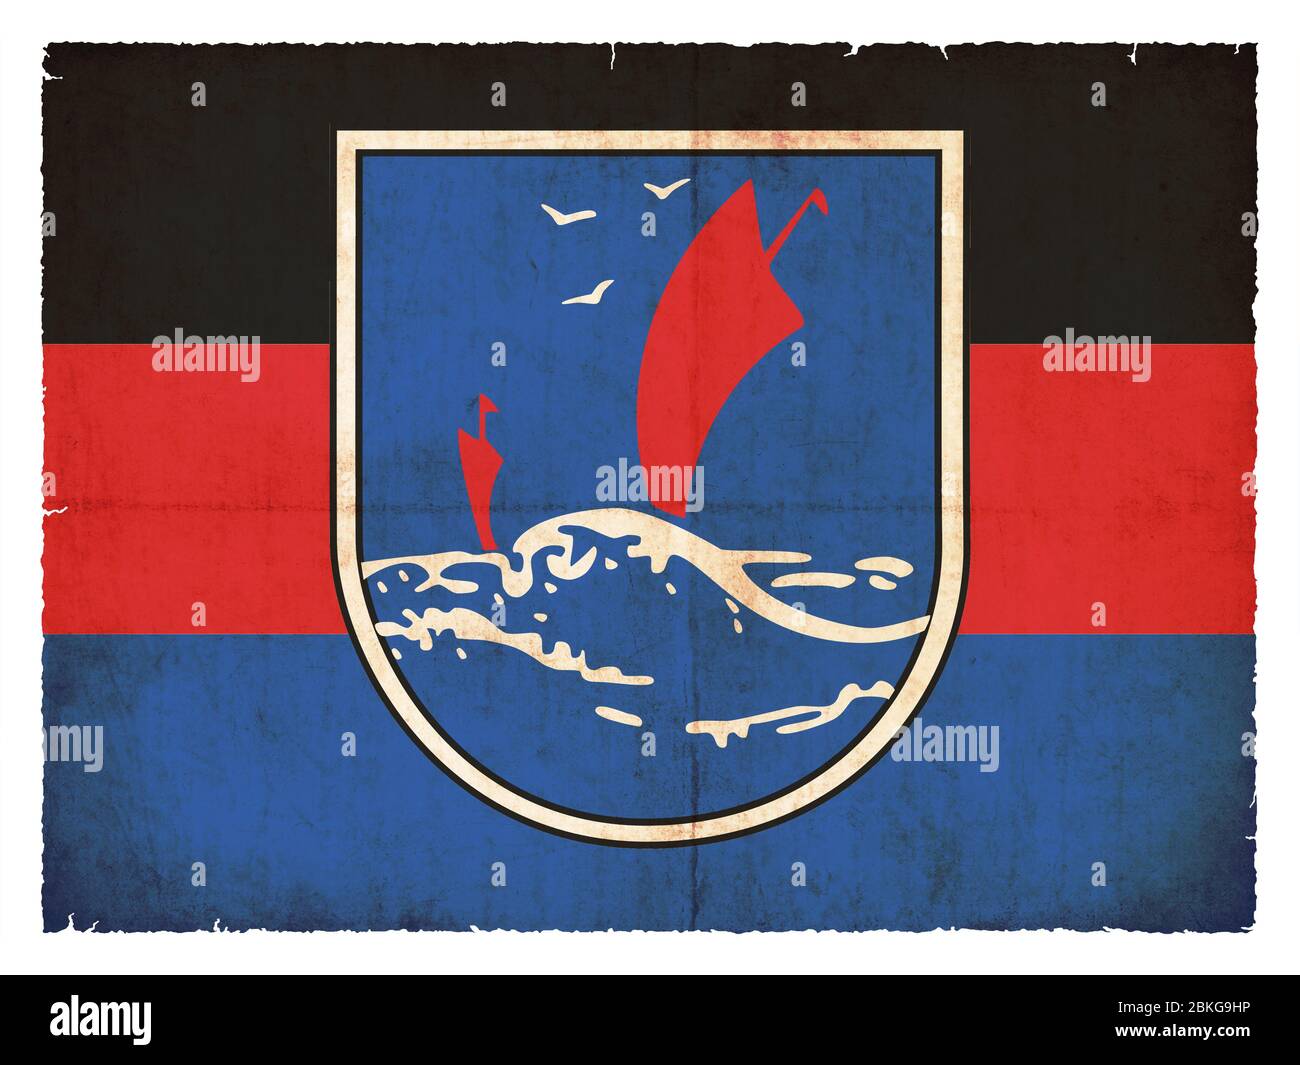 Bandera de la isla alemana Langenoog (Alemania) creada en estilo grunge Foto de stock